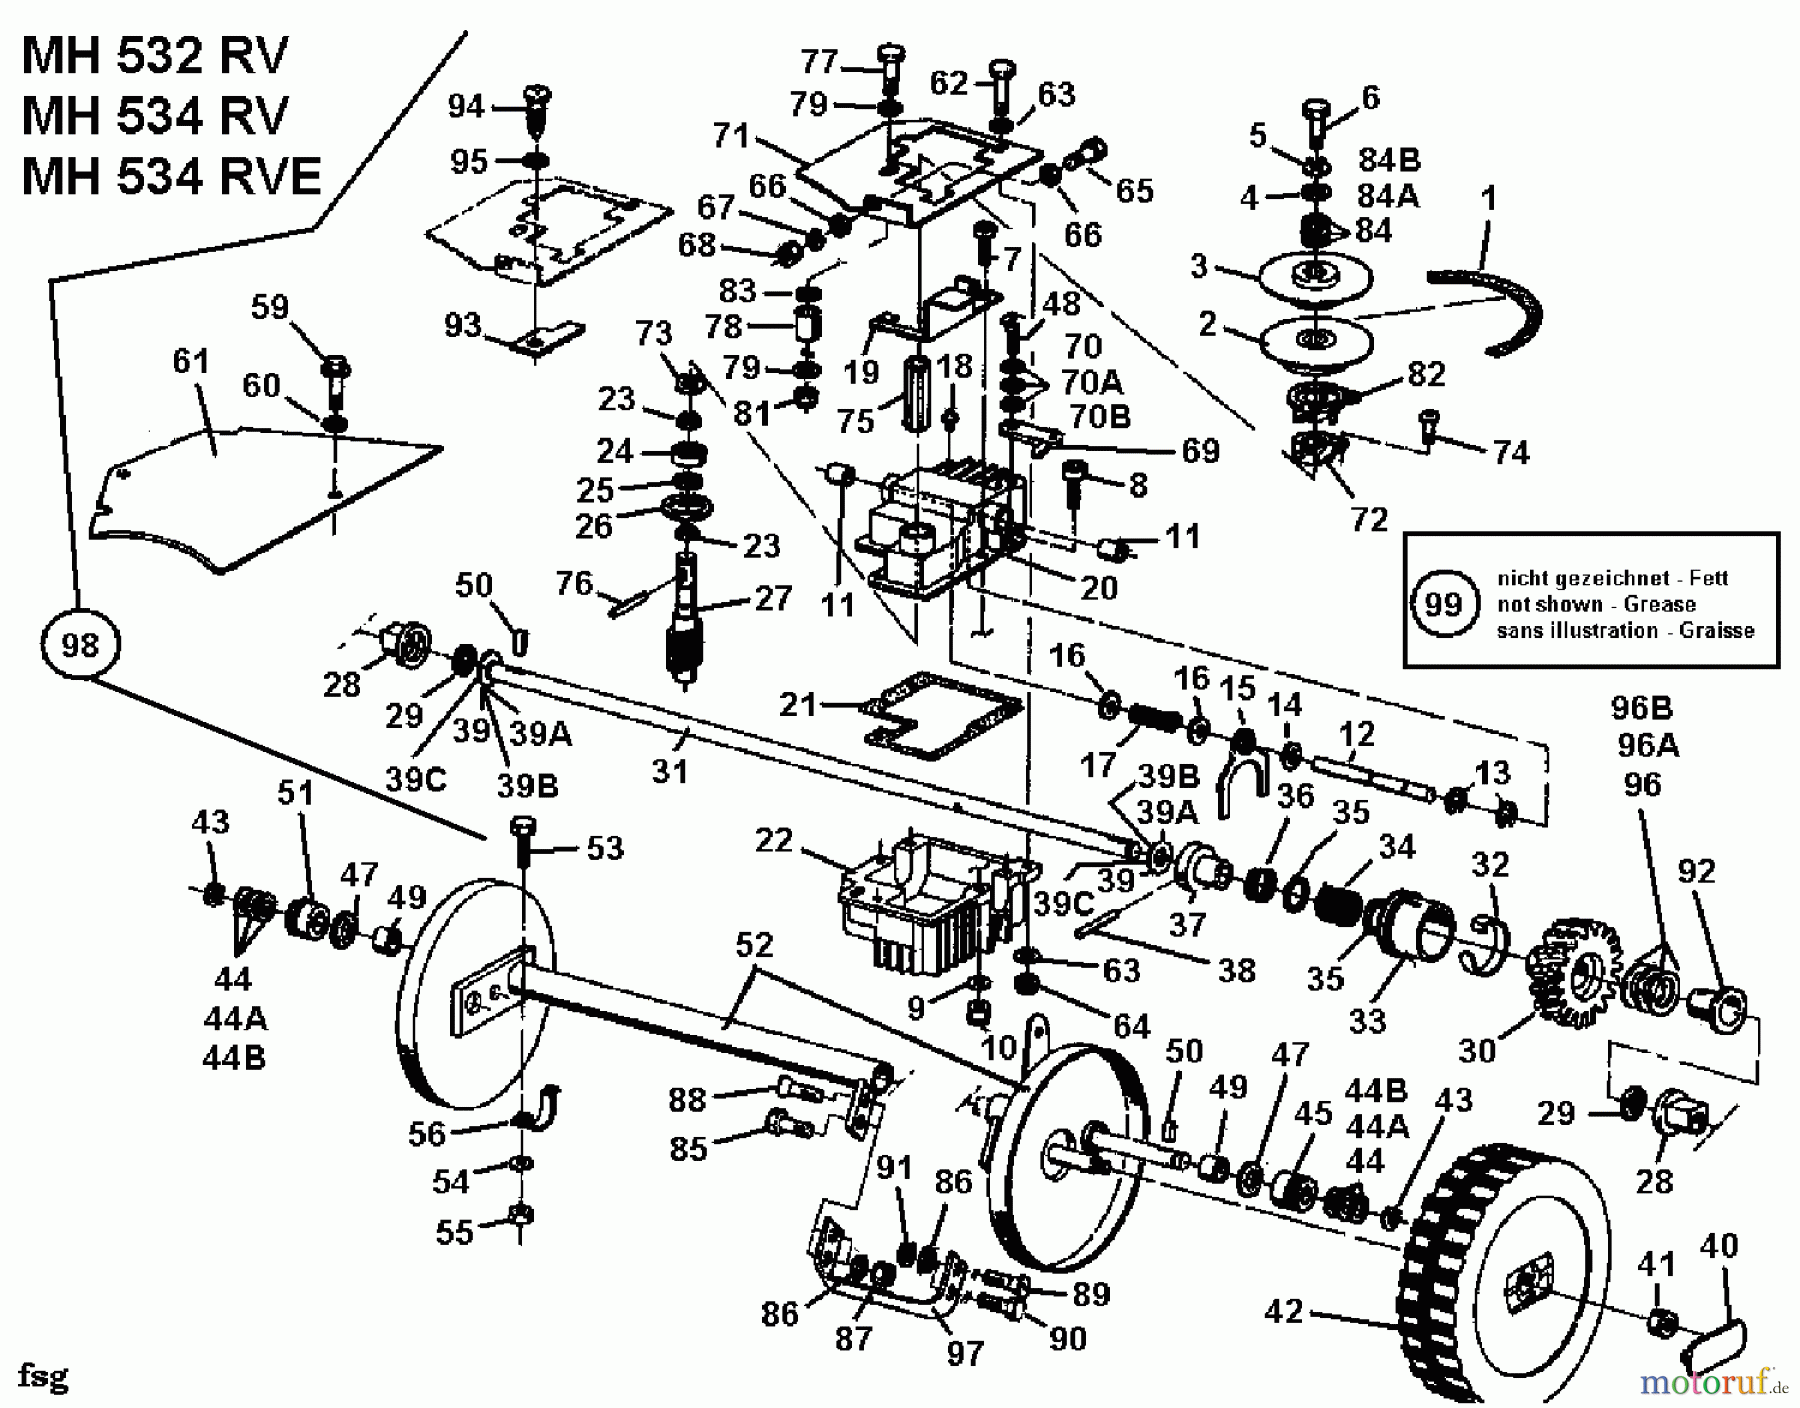  Gutbrod Petrol mower self propelled MH 534 RVE 04007.03  (1993) Gearbox, Wheels